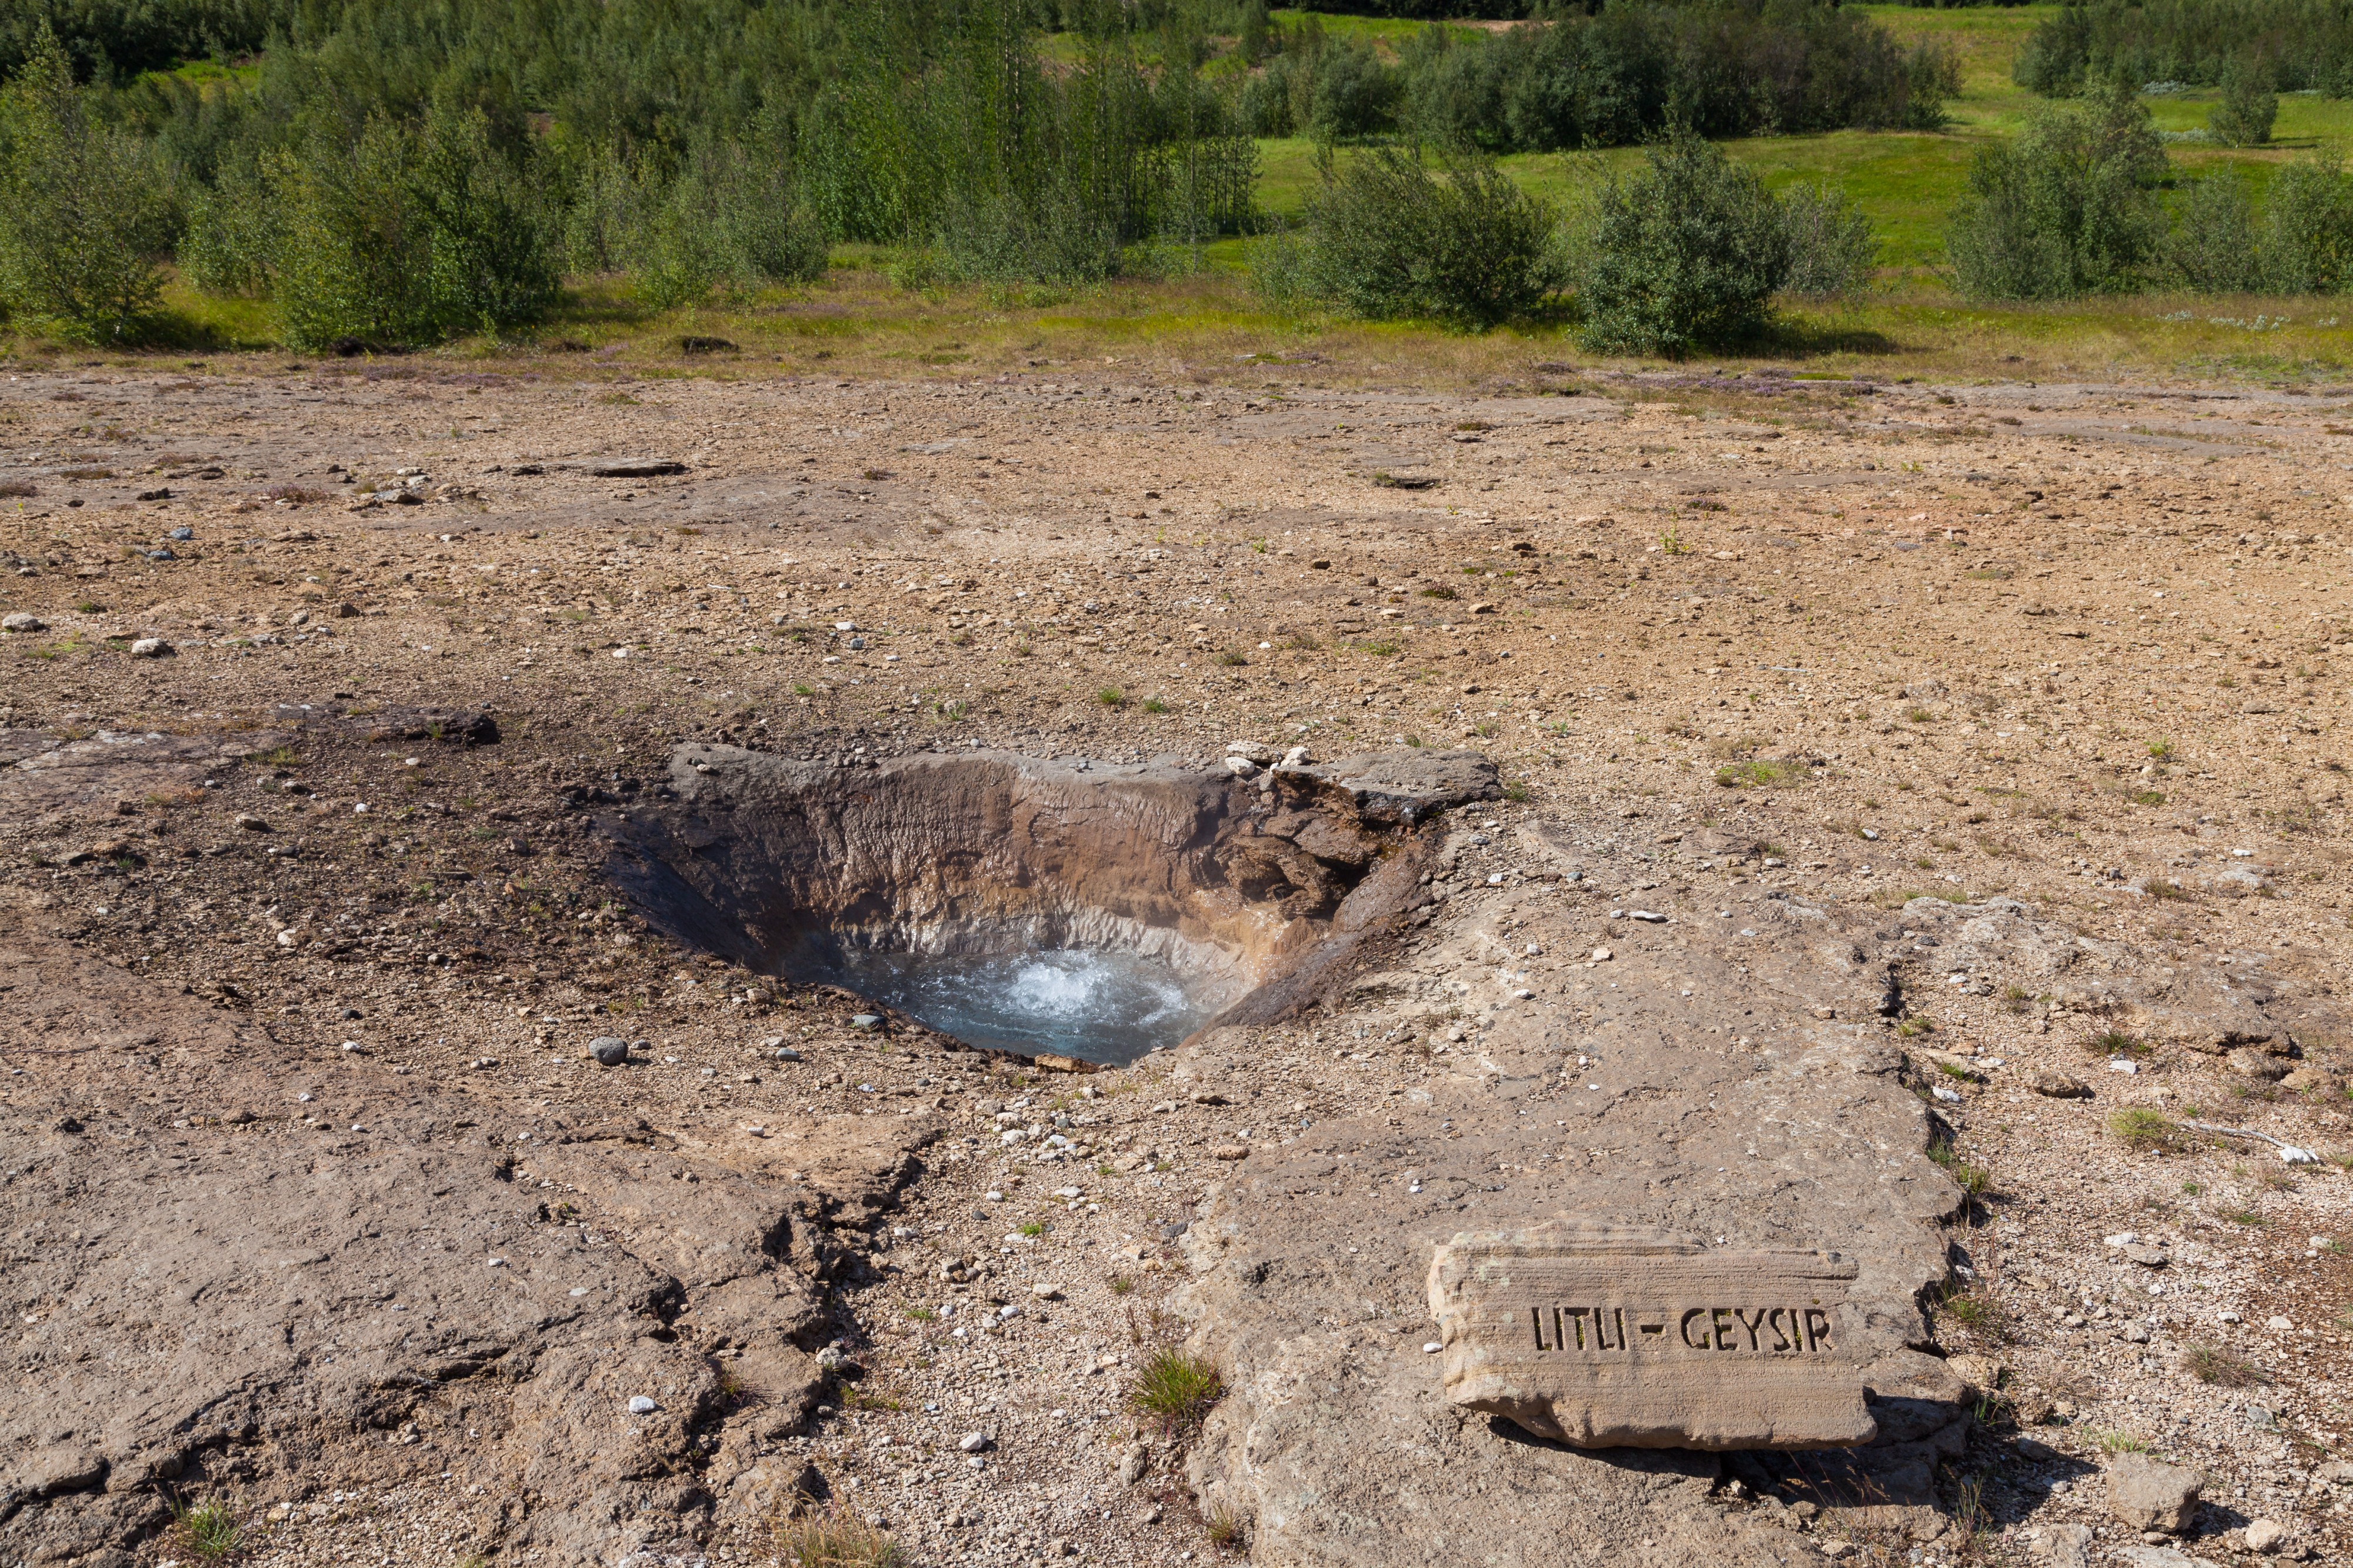 Litli Geysir, Área geotérmica de Geysir, Suðurland, Islandia, 2014-08-16, DD 112